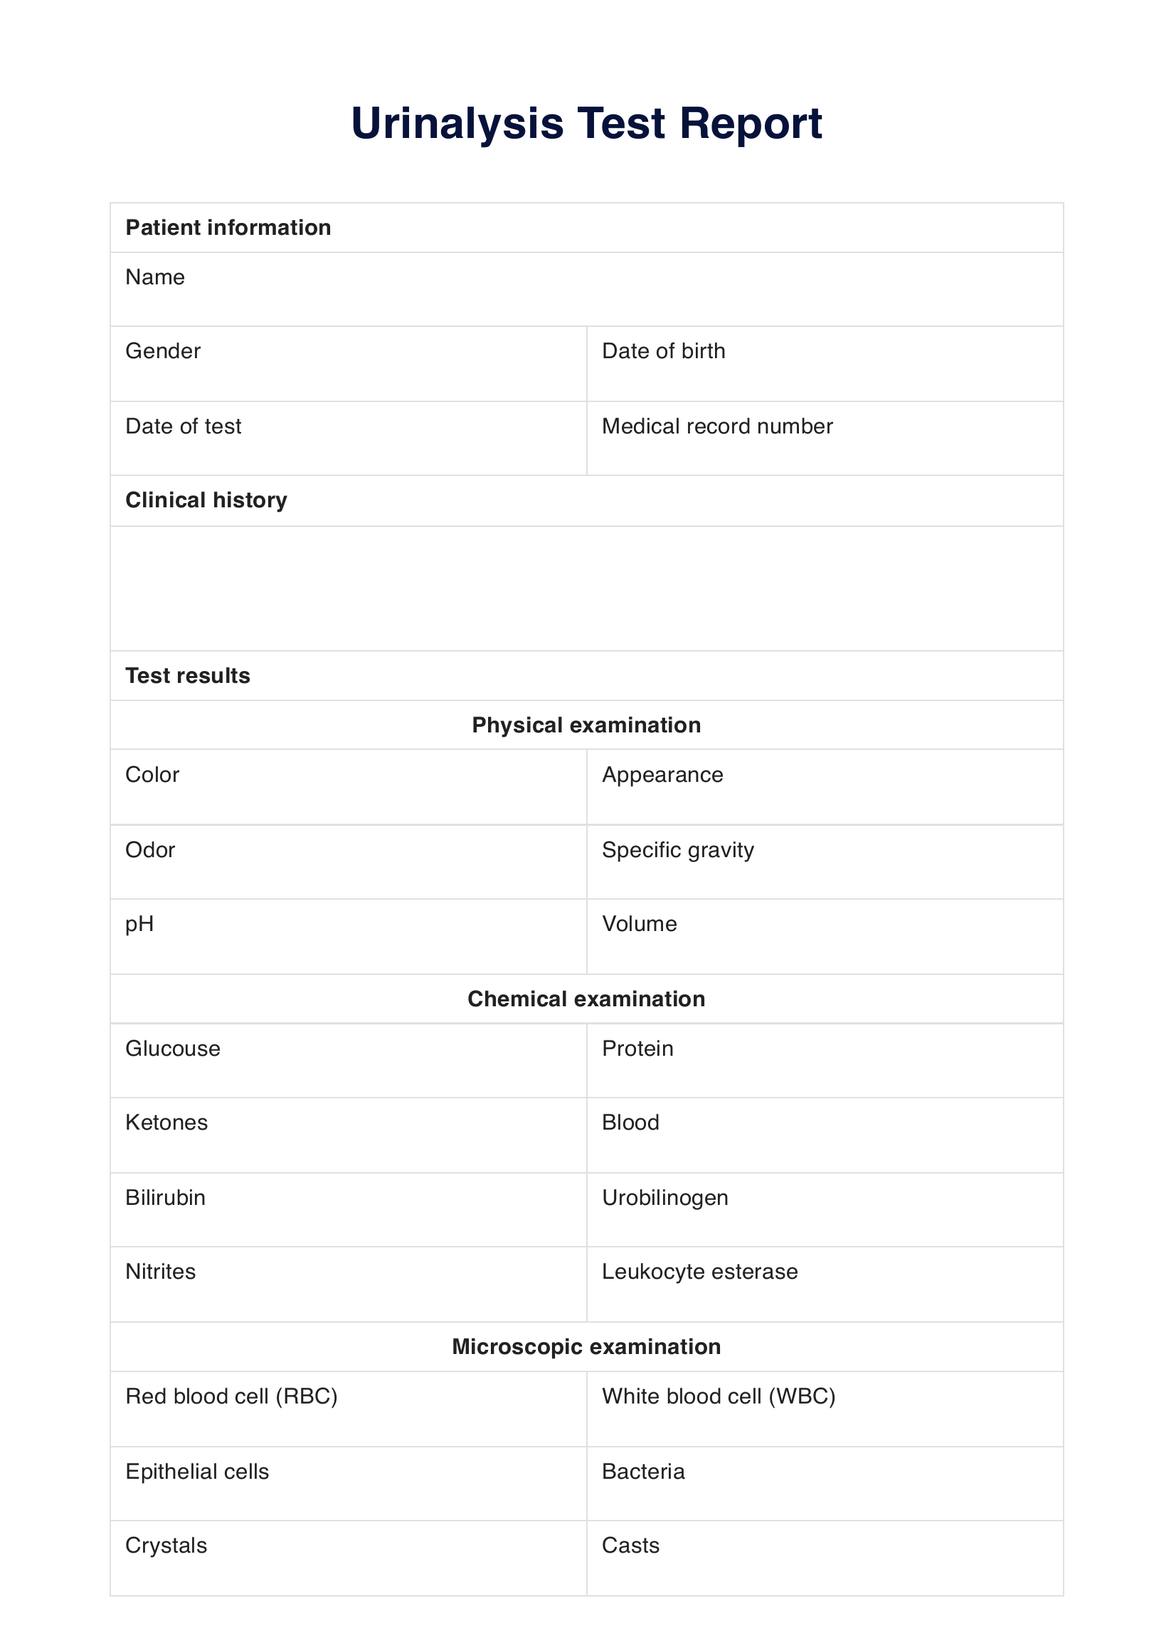 Urinalysis PDF Example